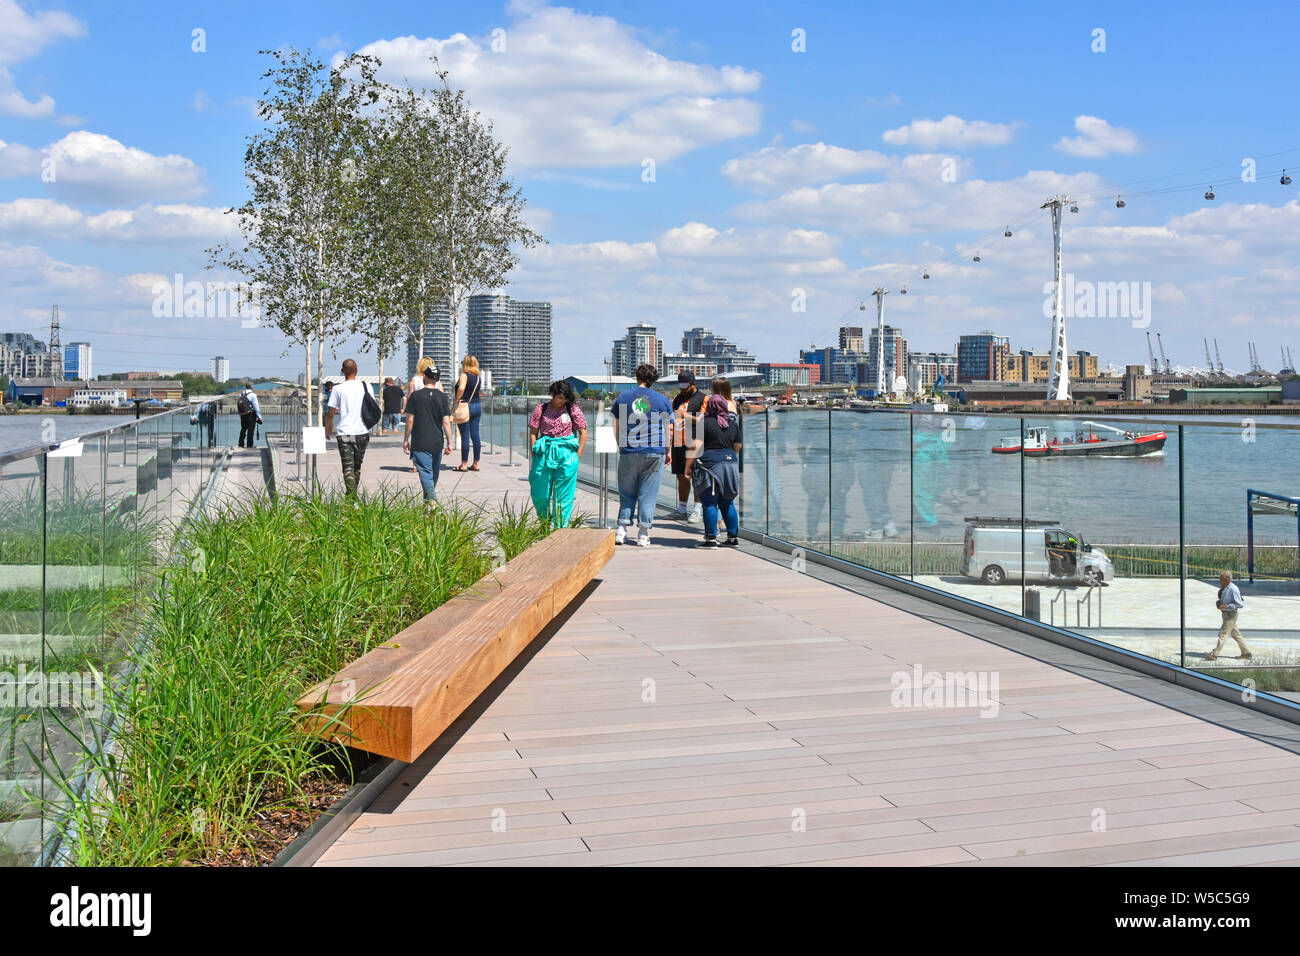 Menschen zu Fuß die Flut Brücken eine lineare Parks links Themse Riverside mit erhöhten Spaziergänge rund um die Halbinsel südlich von Greenwich London England Großbritannien Stockfoto